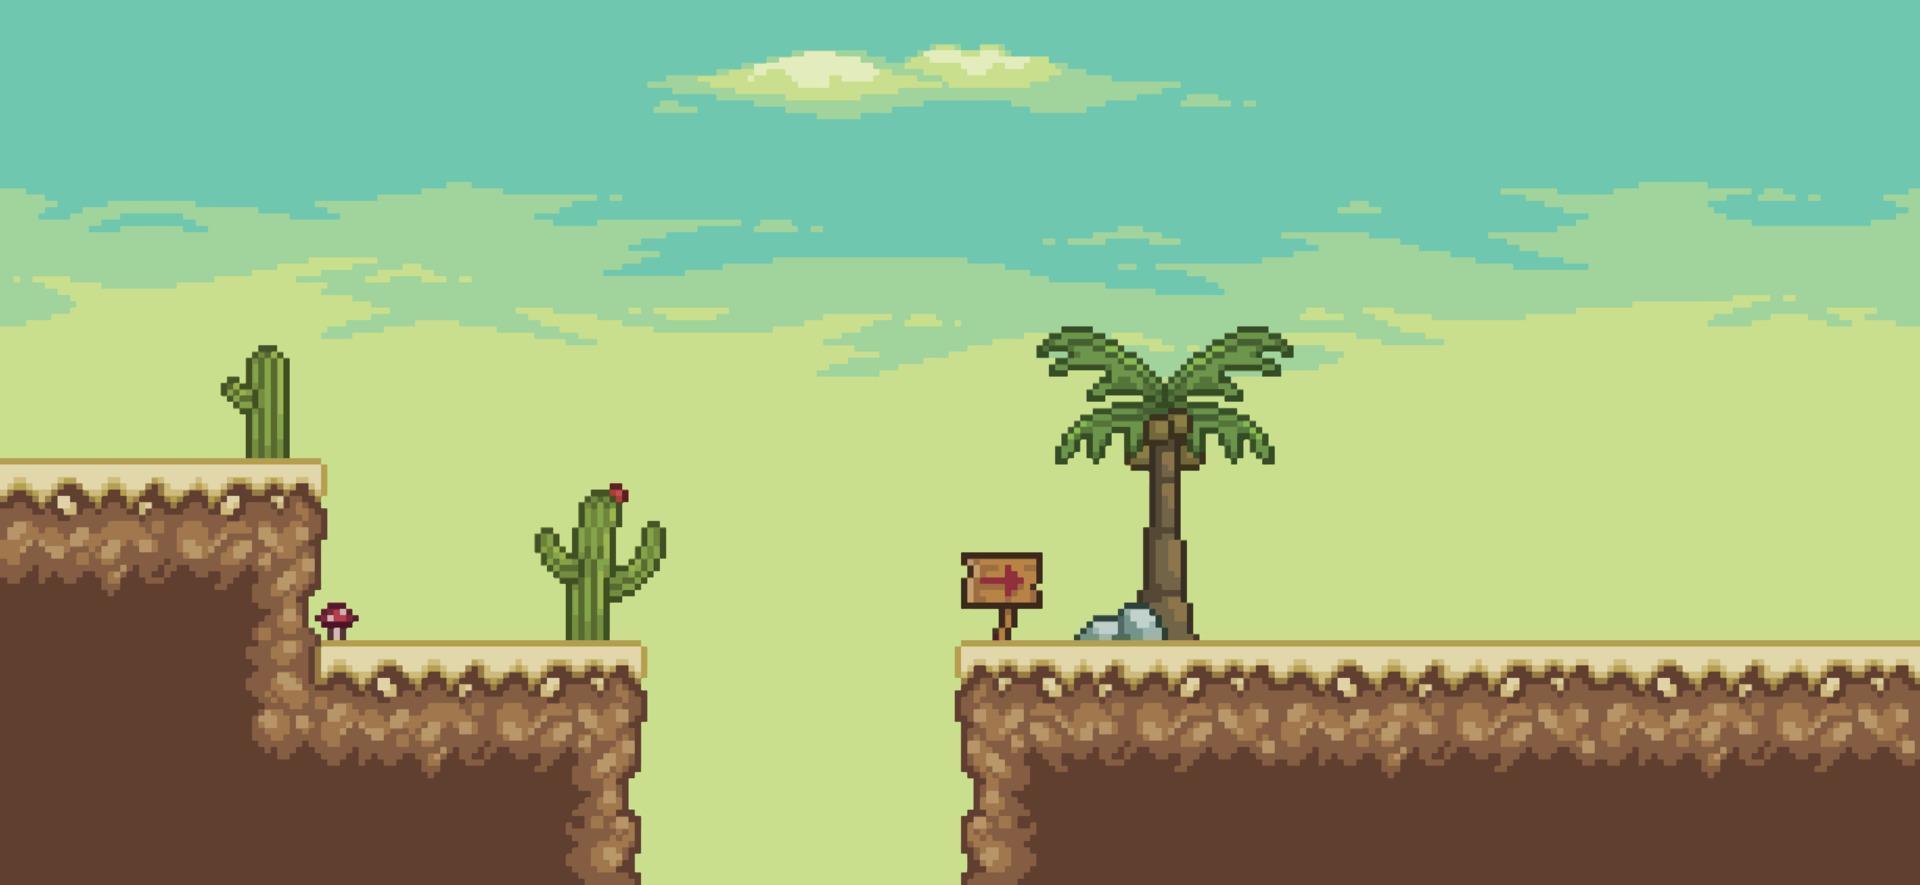 cena do jogo do deserto de pixel art com palmeira, fundo de paisagem de cactos de 8 bits vetor